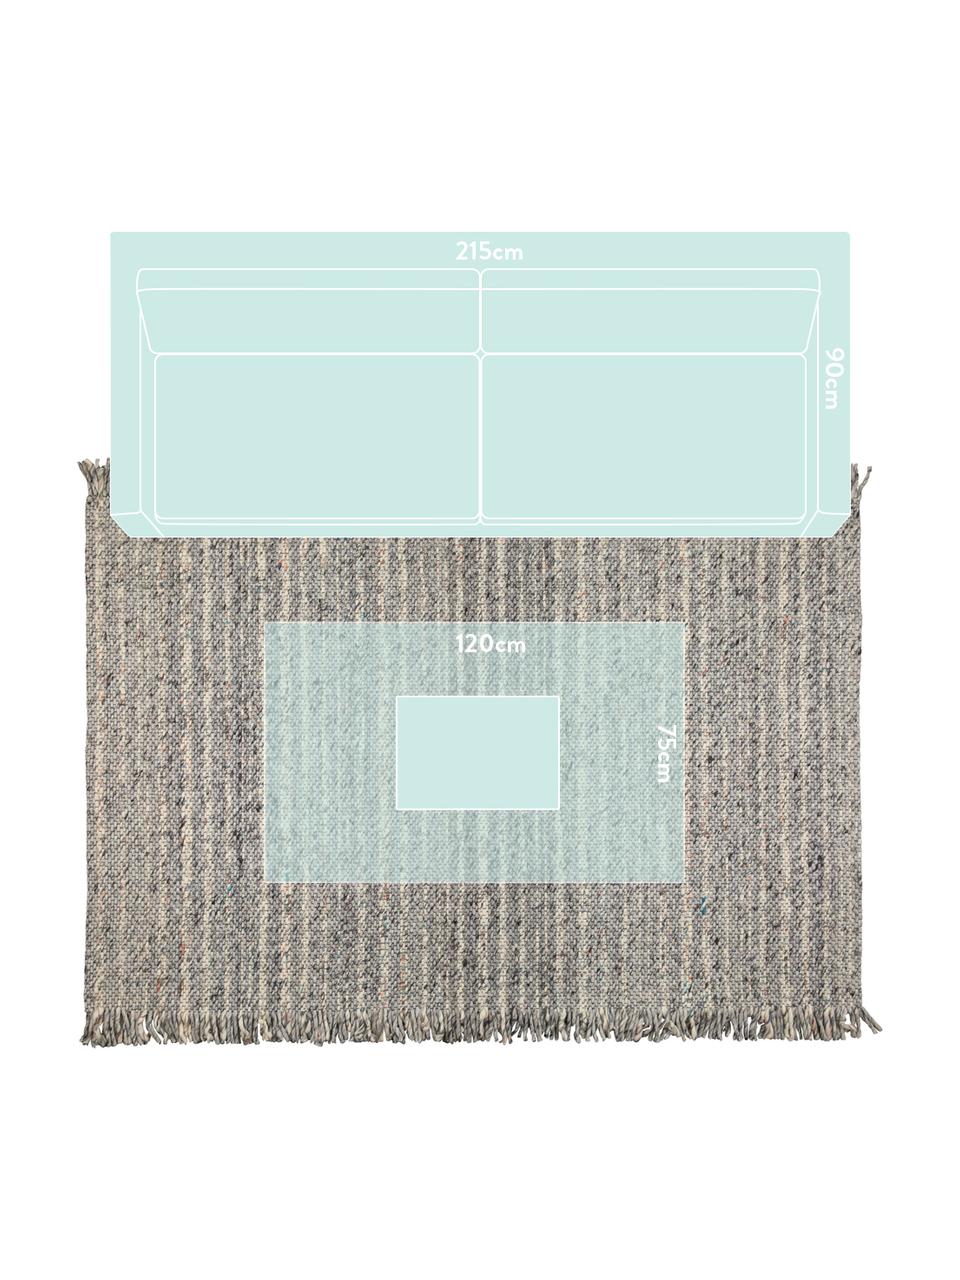 Wollteppich Frills in Grau/Beige mit Fransen, 170 x 240 cm, Flor: 100% Wolle, Grautöne, Beige, B 170 x L 240 cm (Größe M)